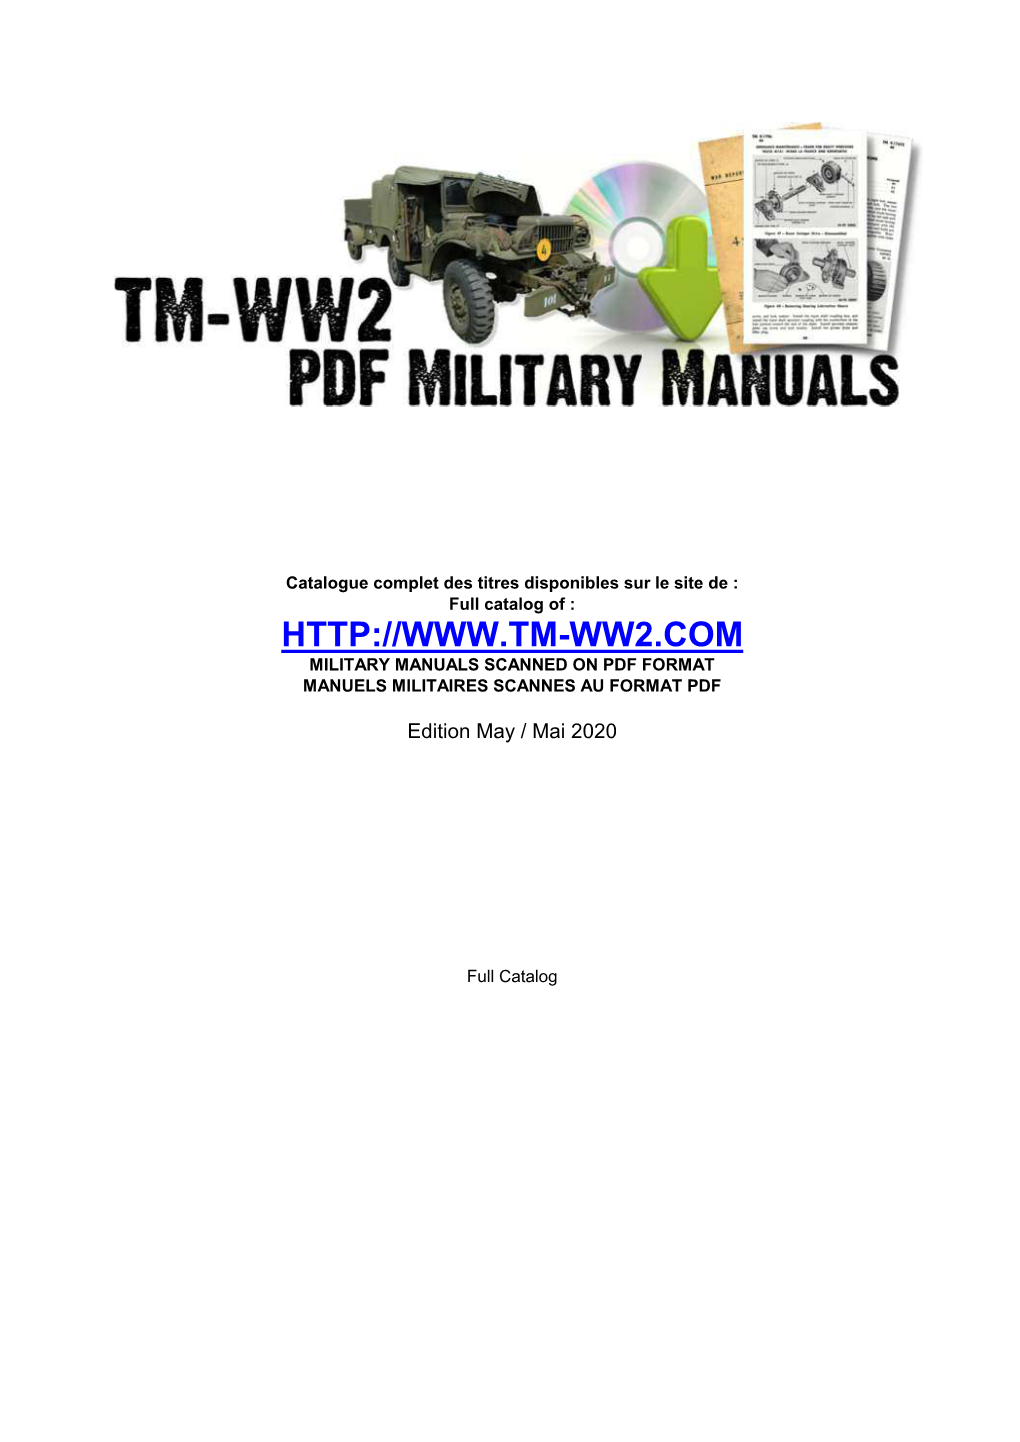 TM-WW2 Manual